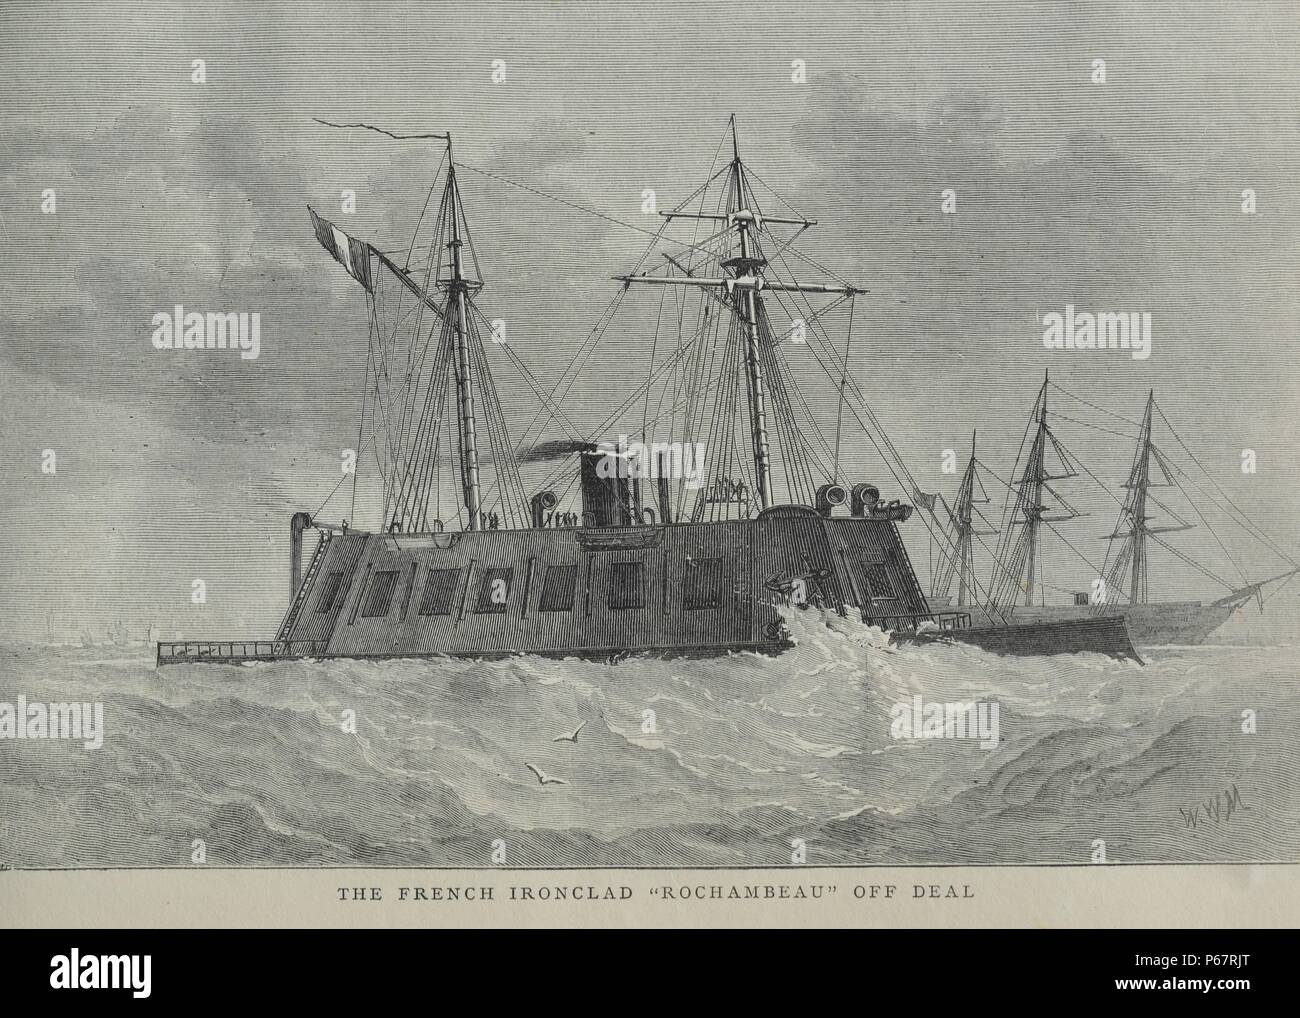 Gravure de l'Ironclad français "Rochambeau". Un cuirassé est un navire à propulsion à vapeur au début de la seconde moitié du xixe siècle. Datée 1870 Banque D'Images